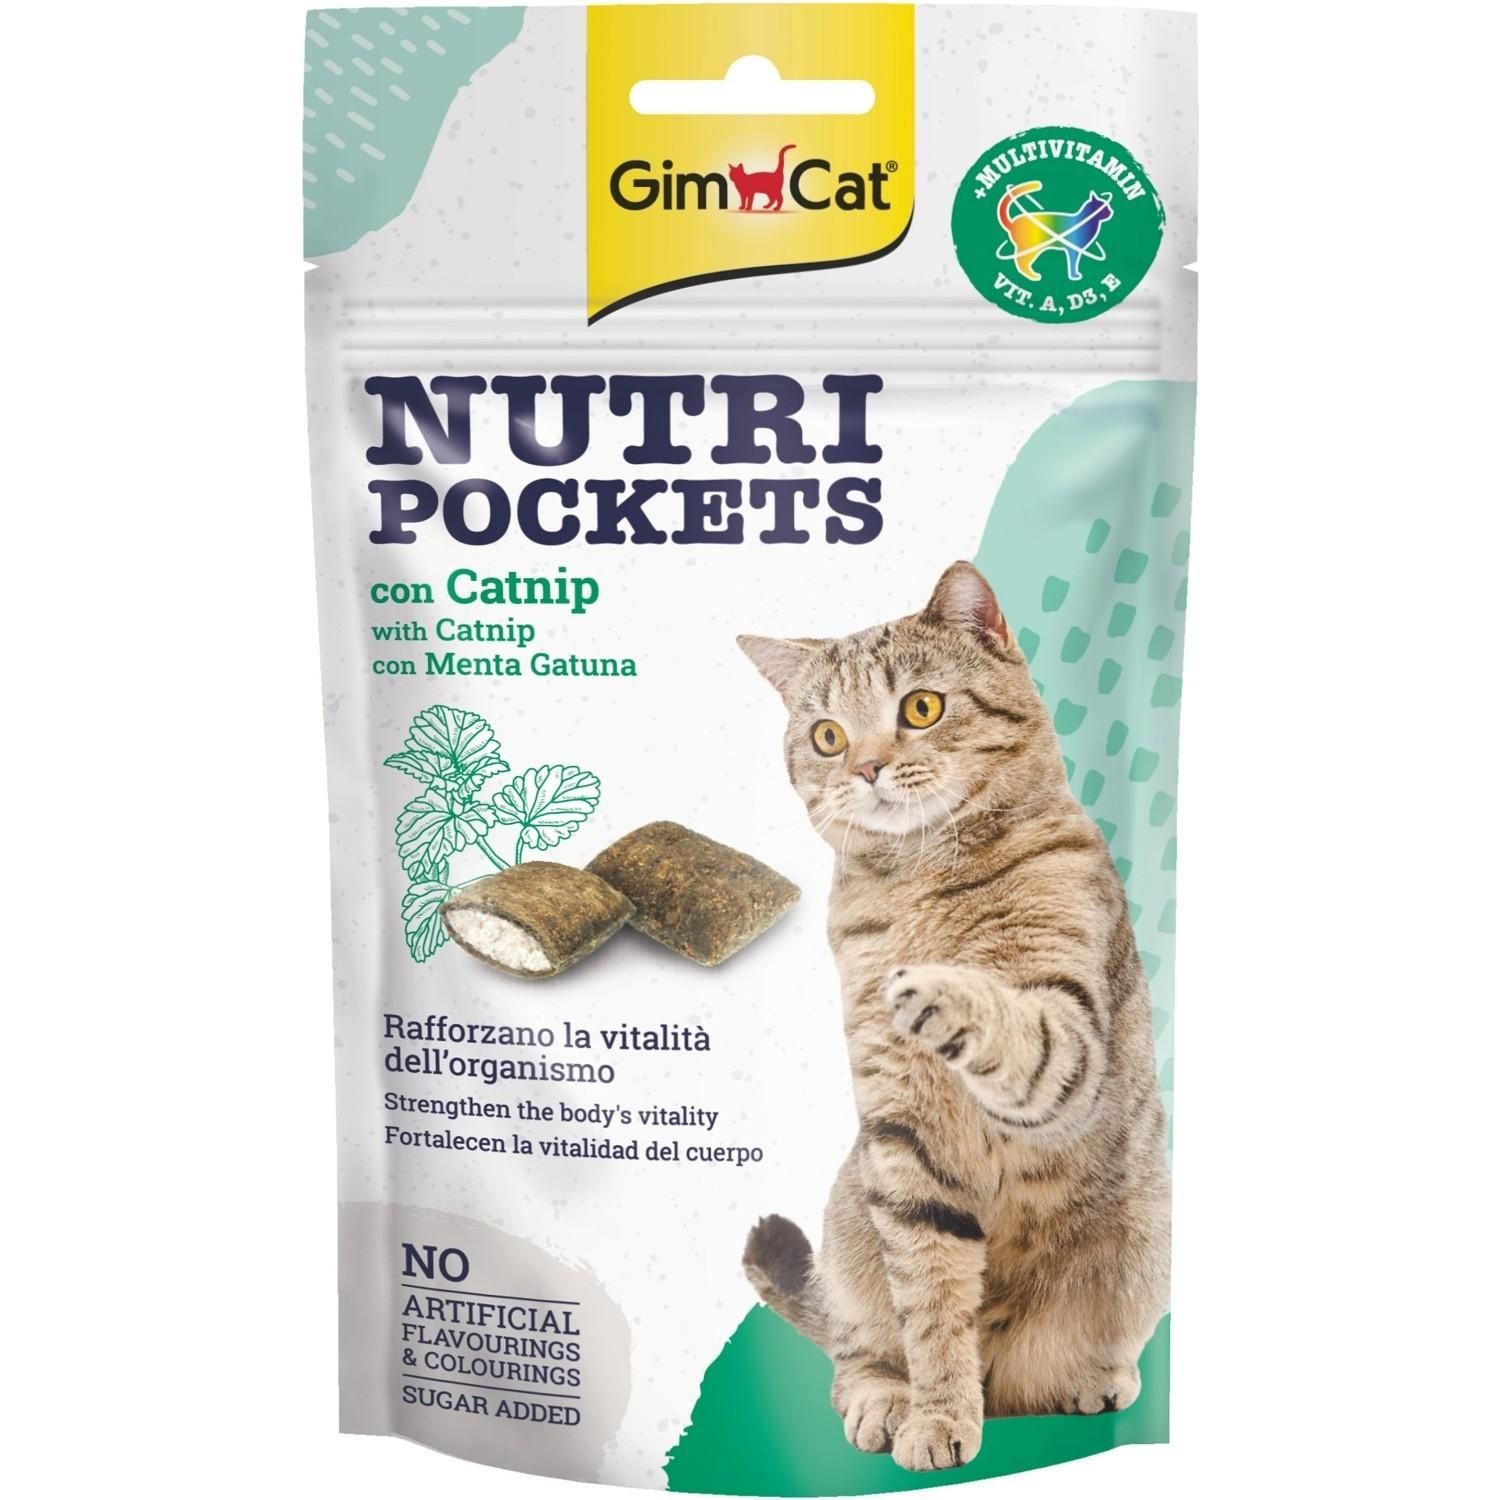 Дентальные лакомства для кошек. GIMCAT Nutri Pockets. Лакомство для очистки зубов у кошки gim Cat. Витамины с кошачьей мятой. Award для кошек купить